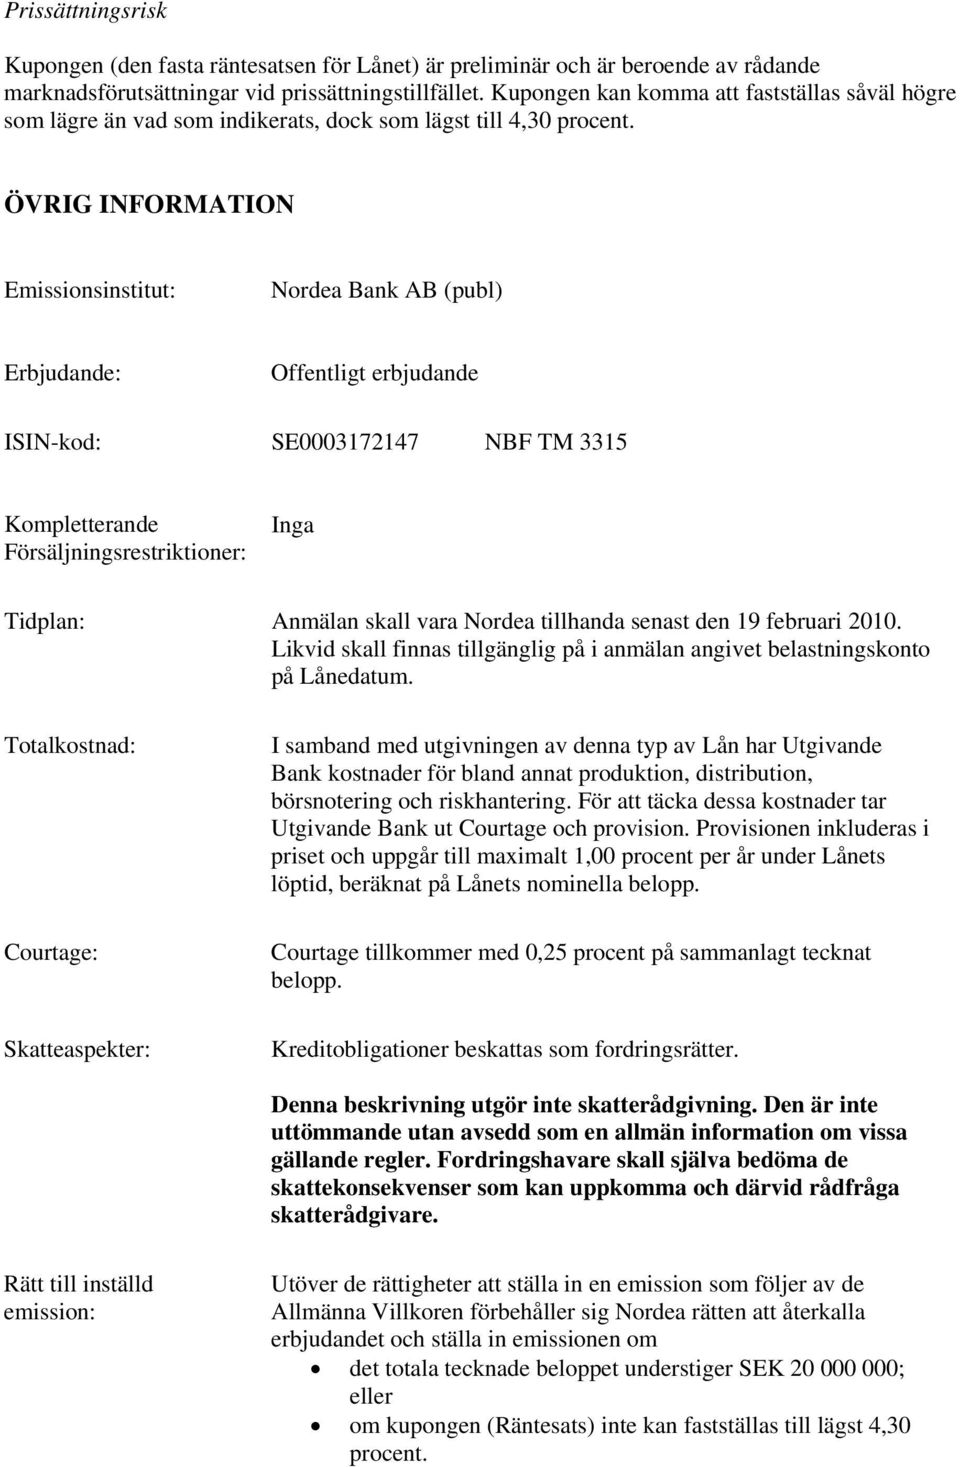 ÖVRIG INFORMATION Emissionsinstitut: Nordea Bank AB (publ) Erbjudande: Offentligt erbjudande ISIN-kod: SE0003172147 NBF TM 3315 Kompletterande Försäljningsrestriktioner: Inga Tidplan: Anmälan skall